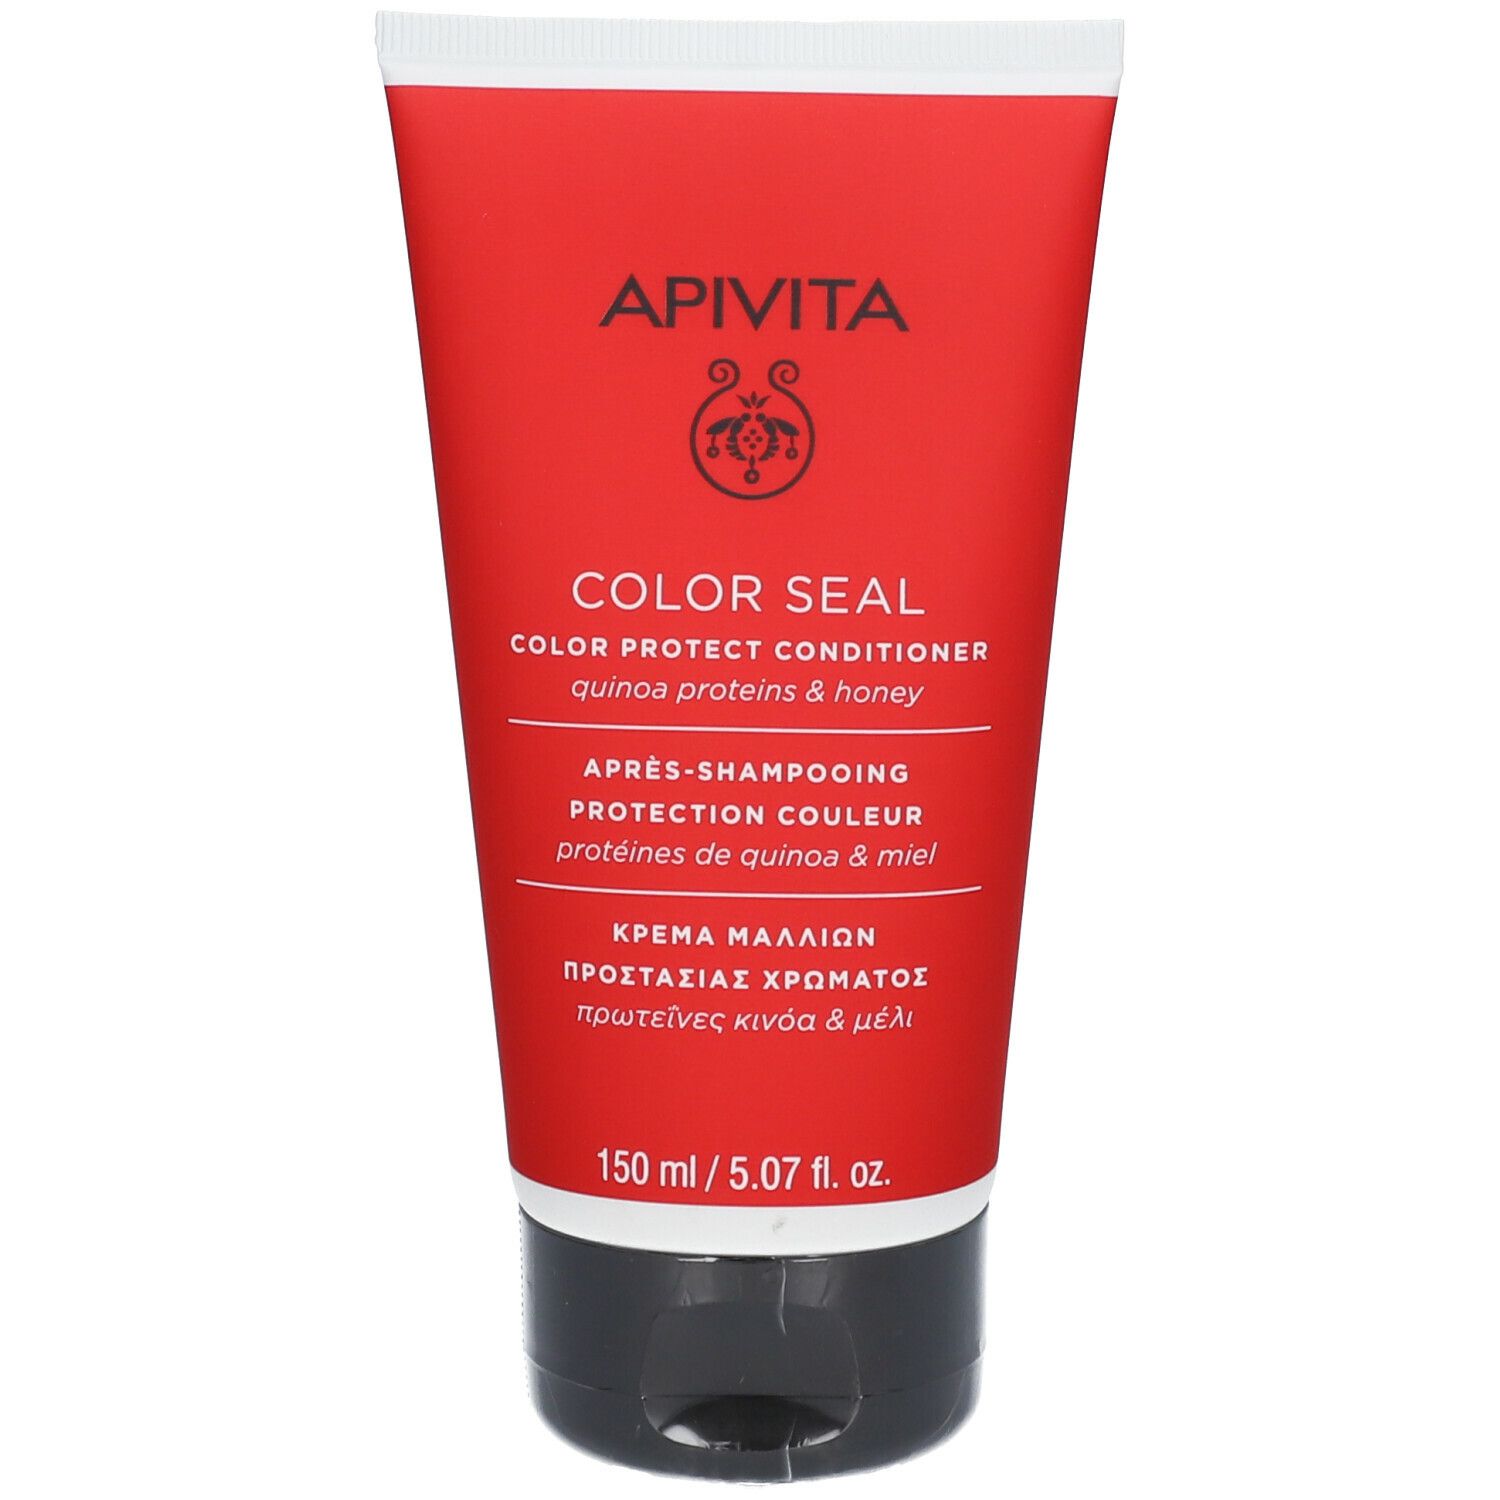 APIVITA Color Protect Konditioner für coloriertes Haar